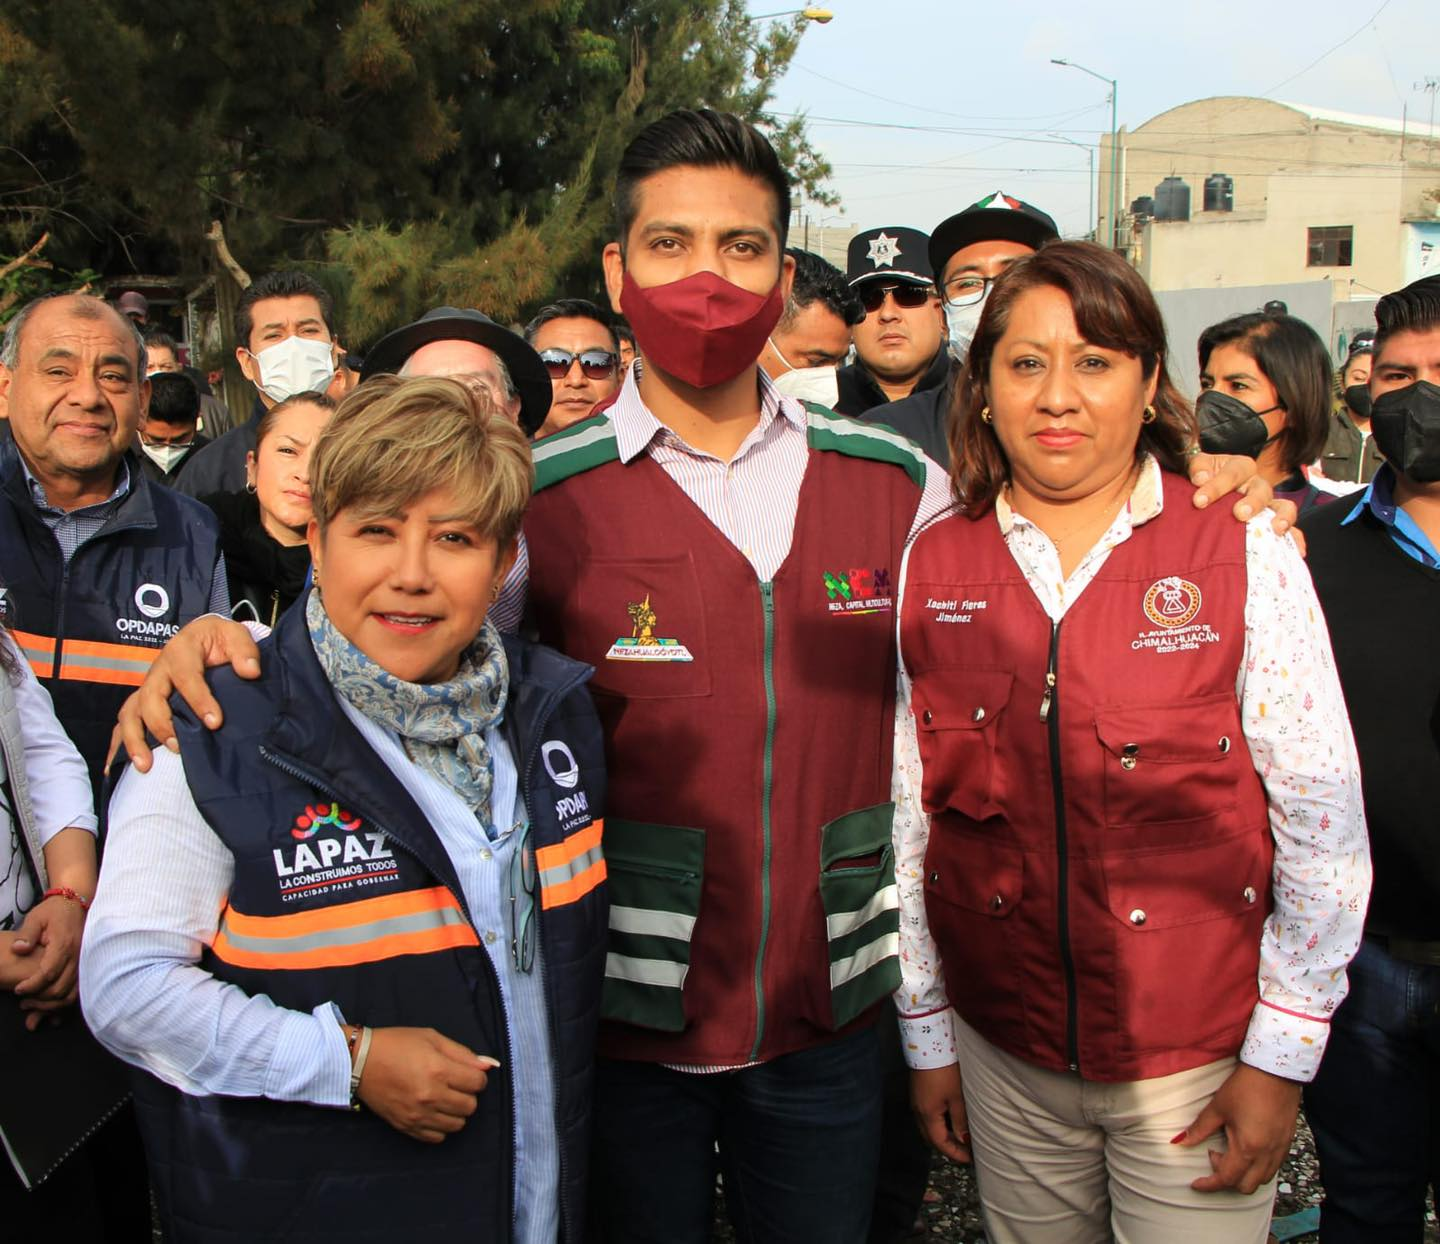 Municipios de Chimalhuacán, La Paz y Nezahualcóyotl unen esfuerzos en seguridad y servicios públicos